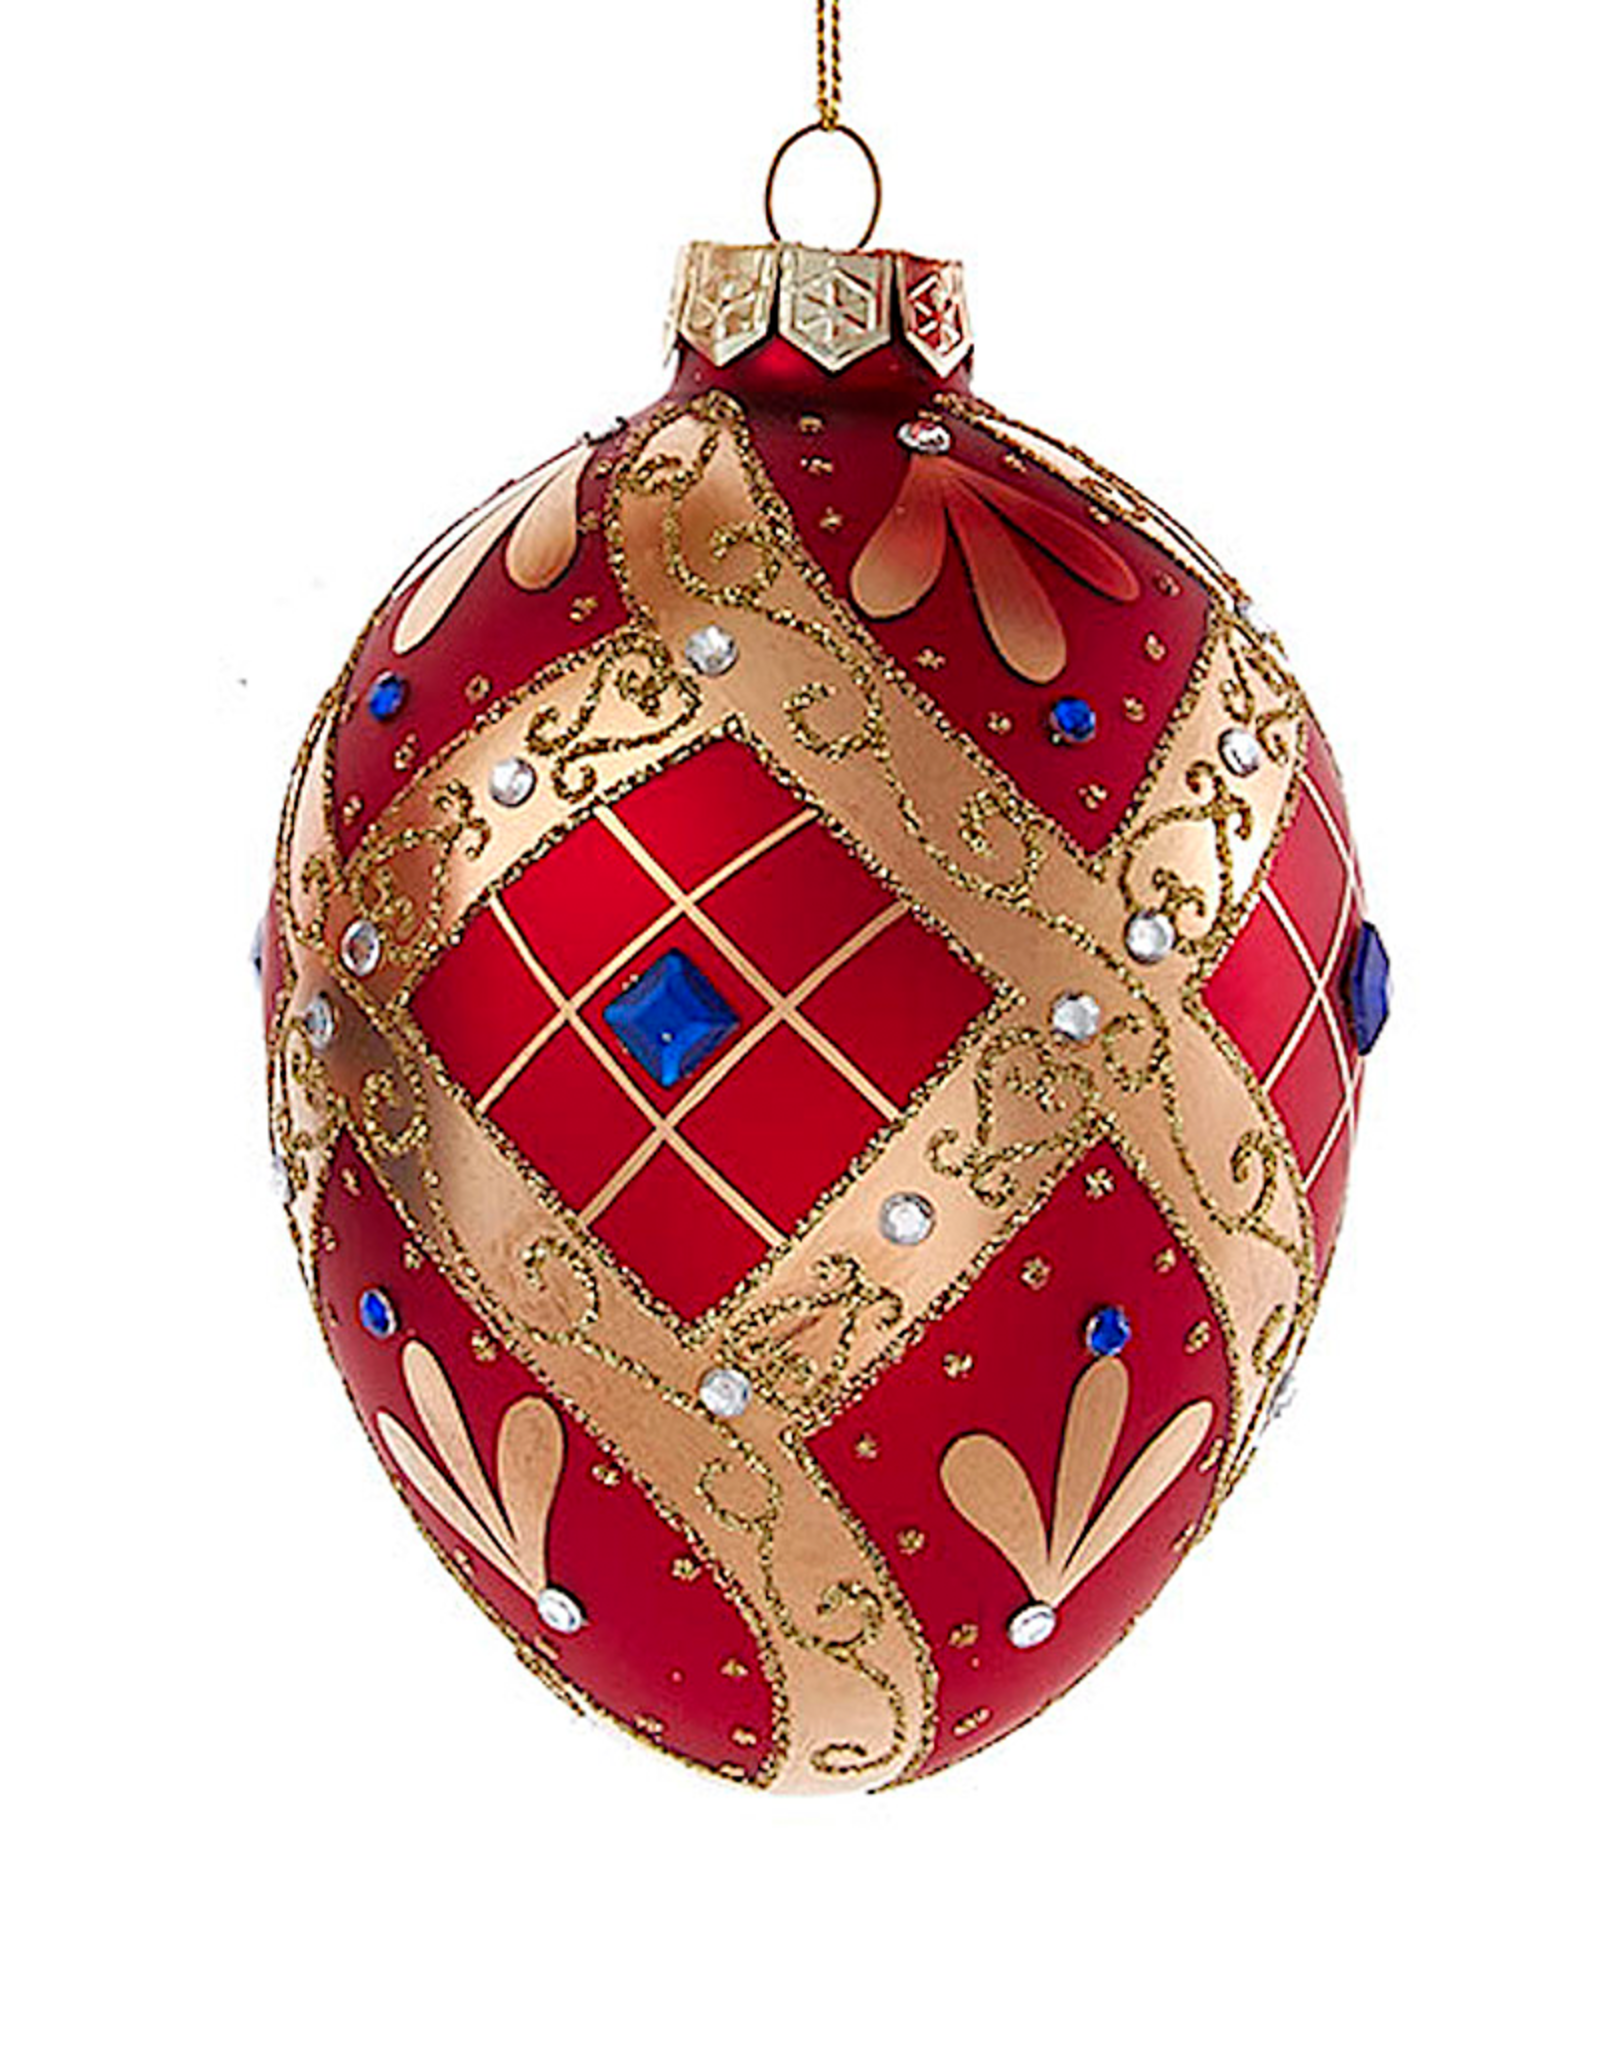 Kurt Adler Glass Egg Ornament 1ct 120mm Red And Gold Egg